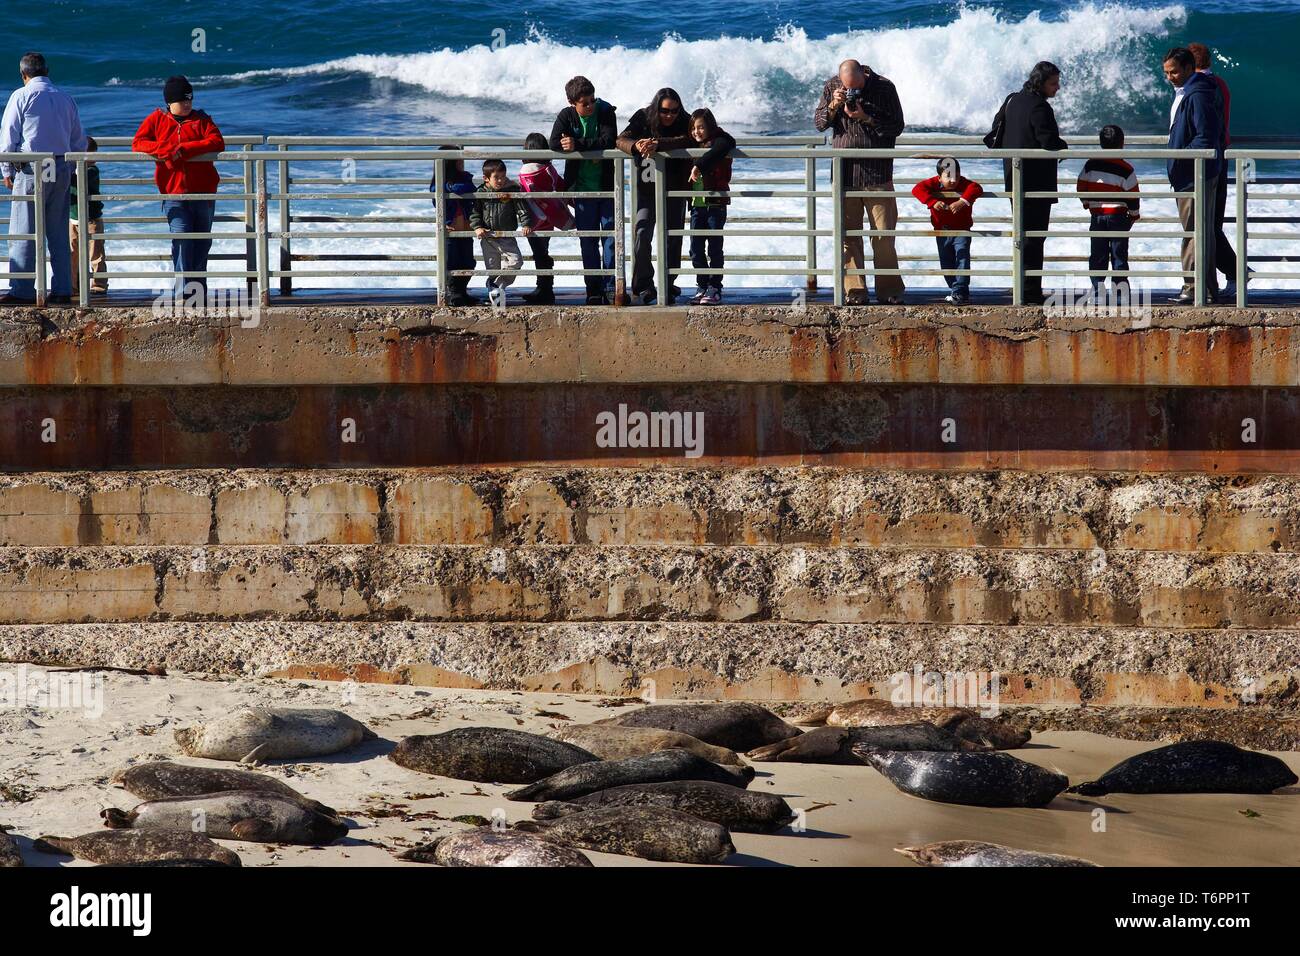 Juntas en la playa con los espectadores, San Diego, California, EE.UU. Foto de stock